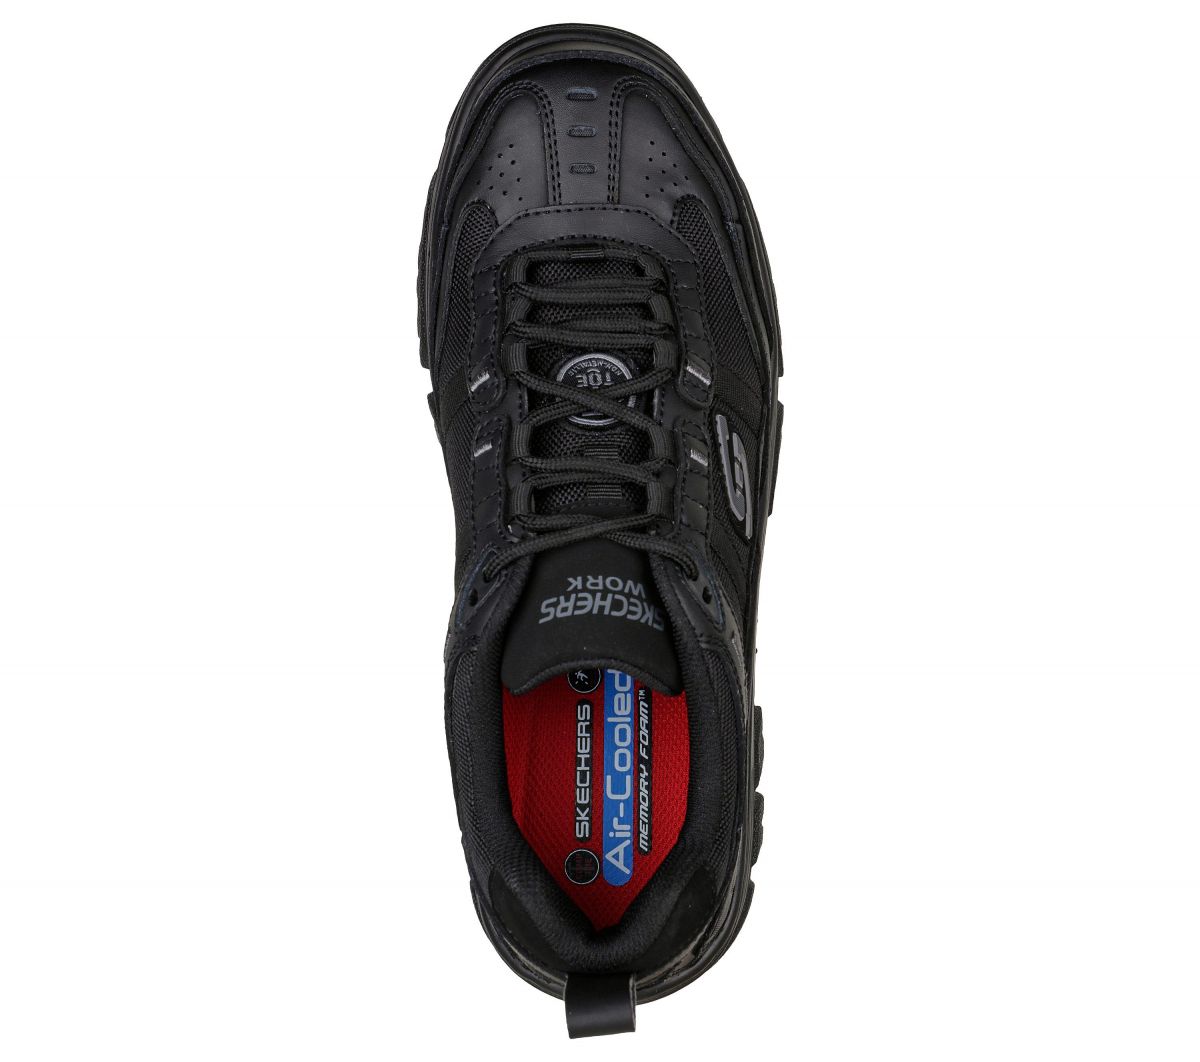 SKECHERS WORK Men's Burgin - Sawda Composite Toe Work Shoe Black - 200088-BLK